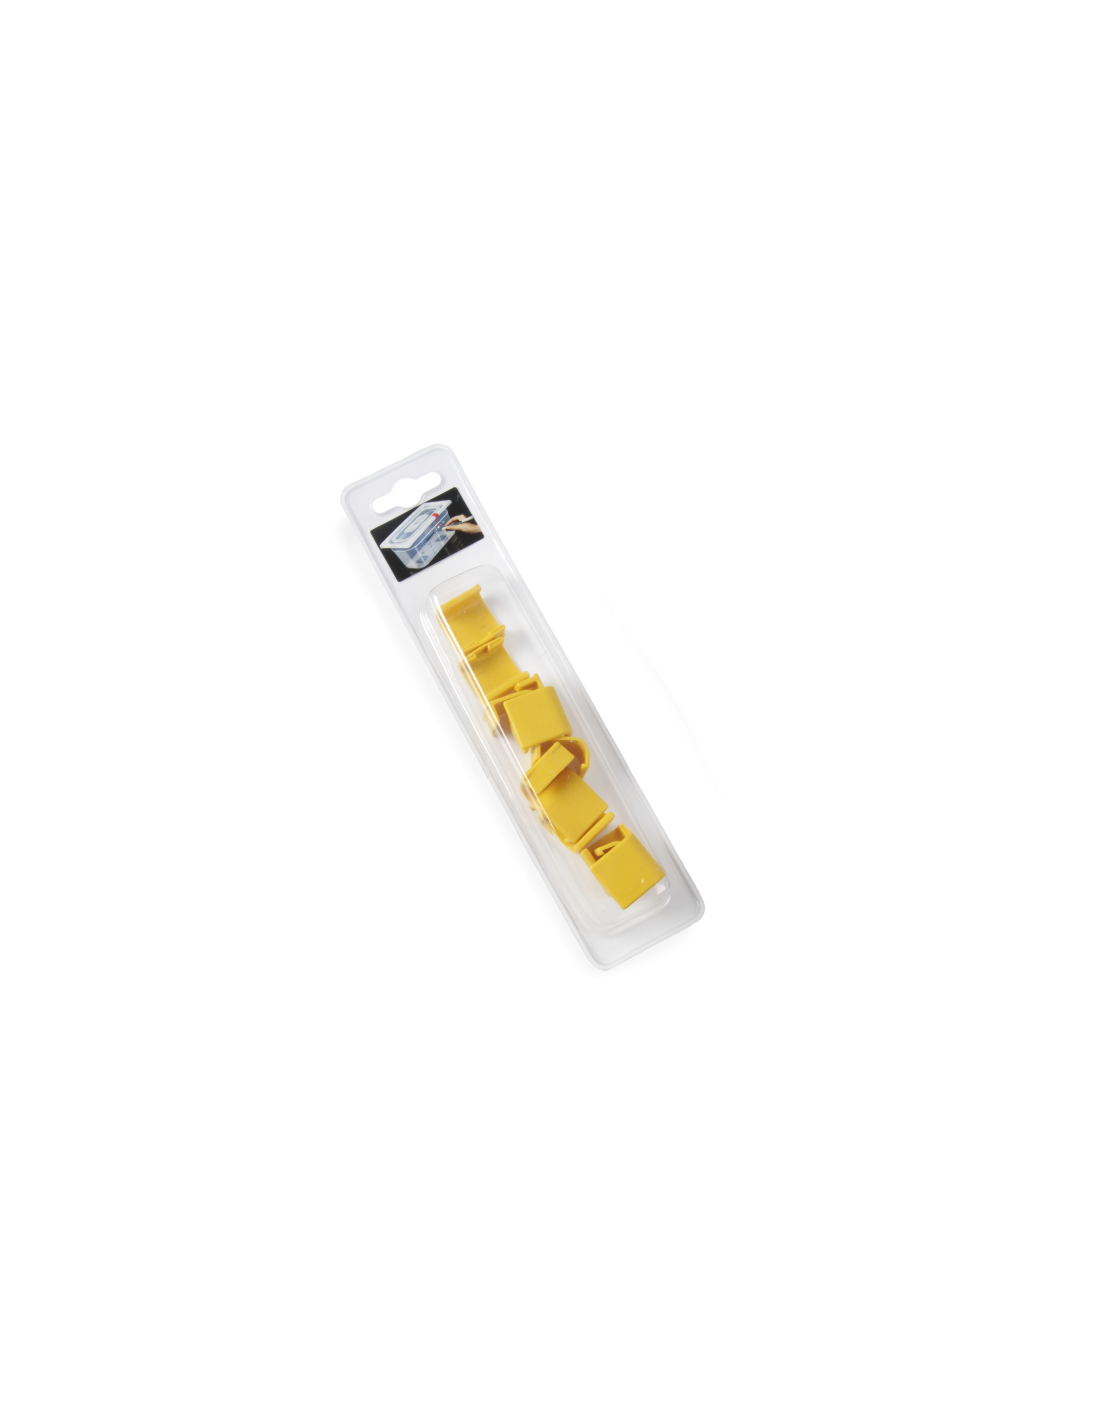 Clips coperchi - Giallo - Per contenitori Gastronorm HACCP - 12 pezzi